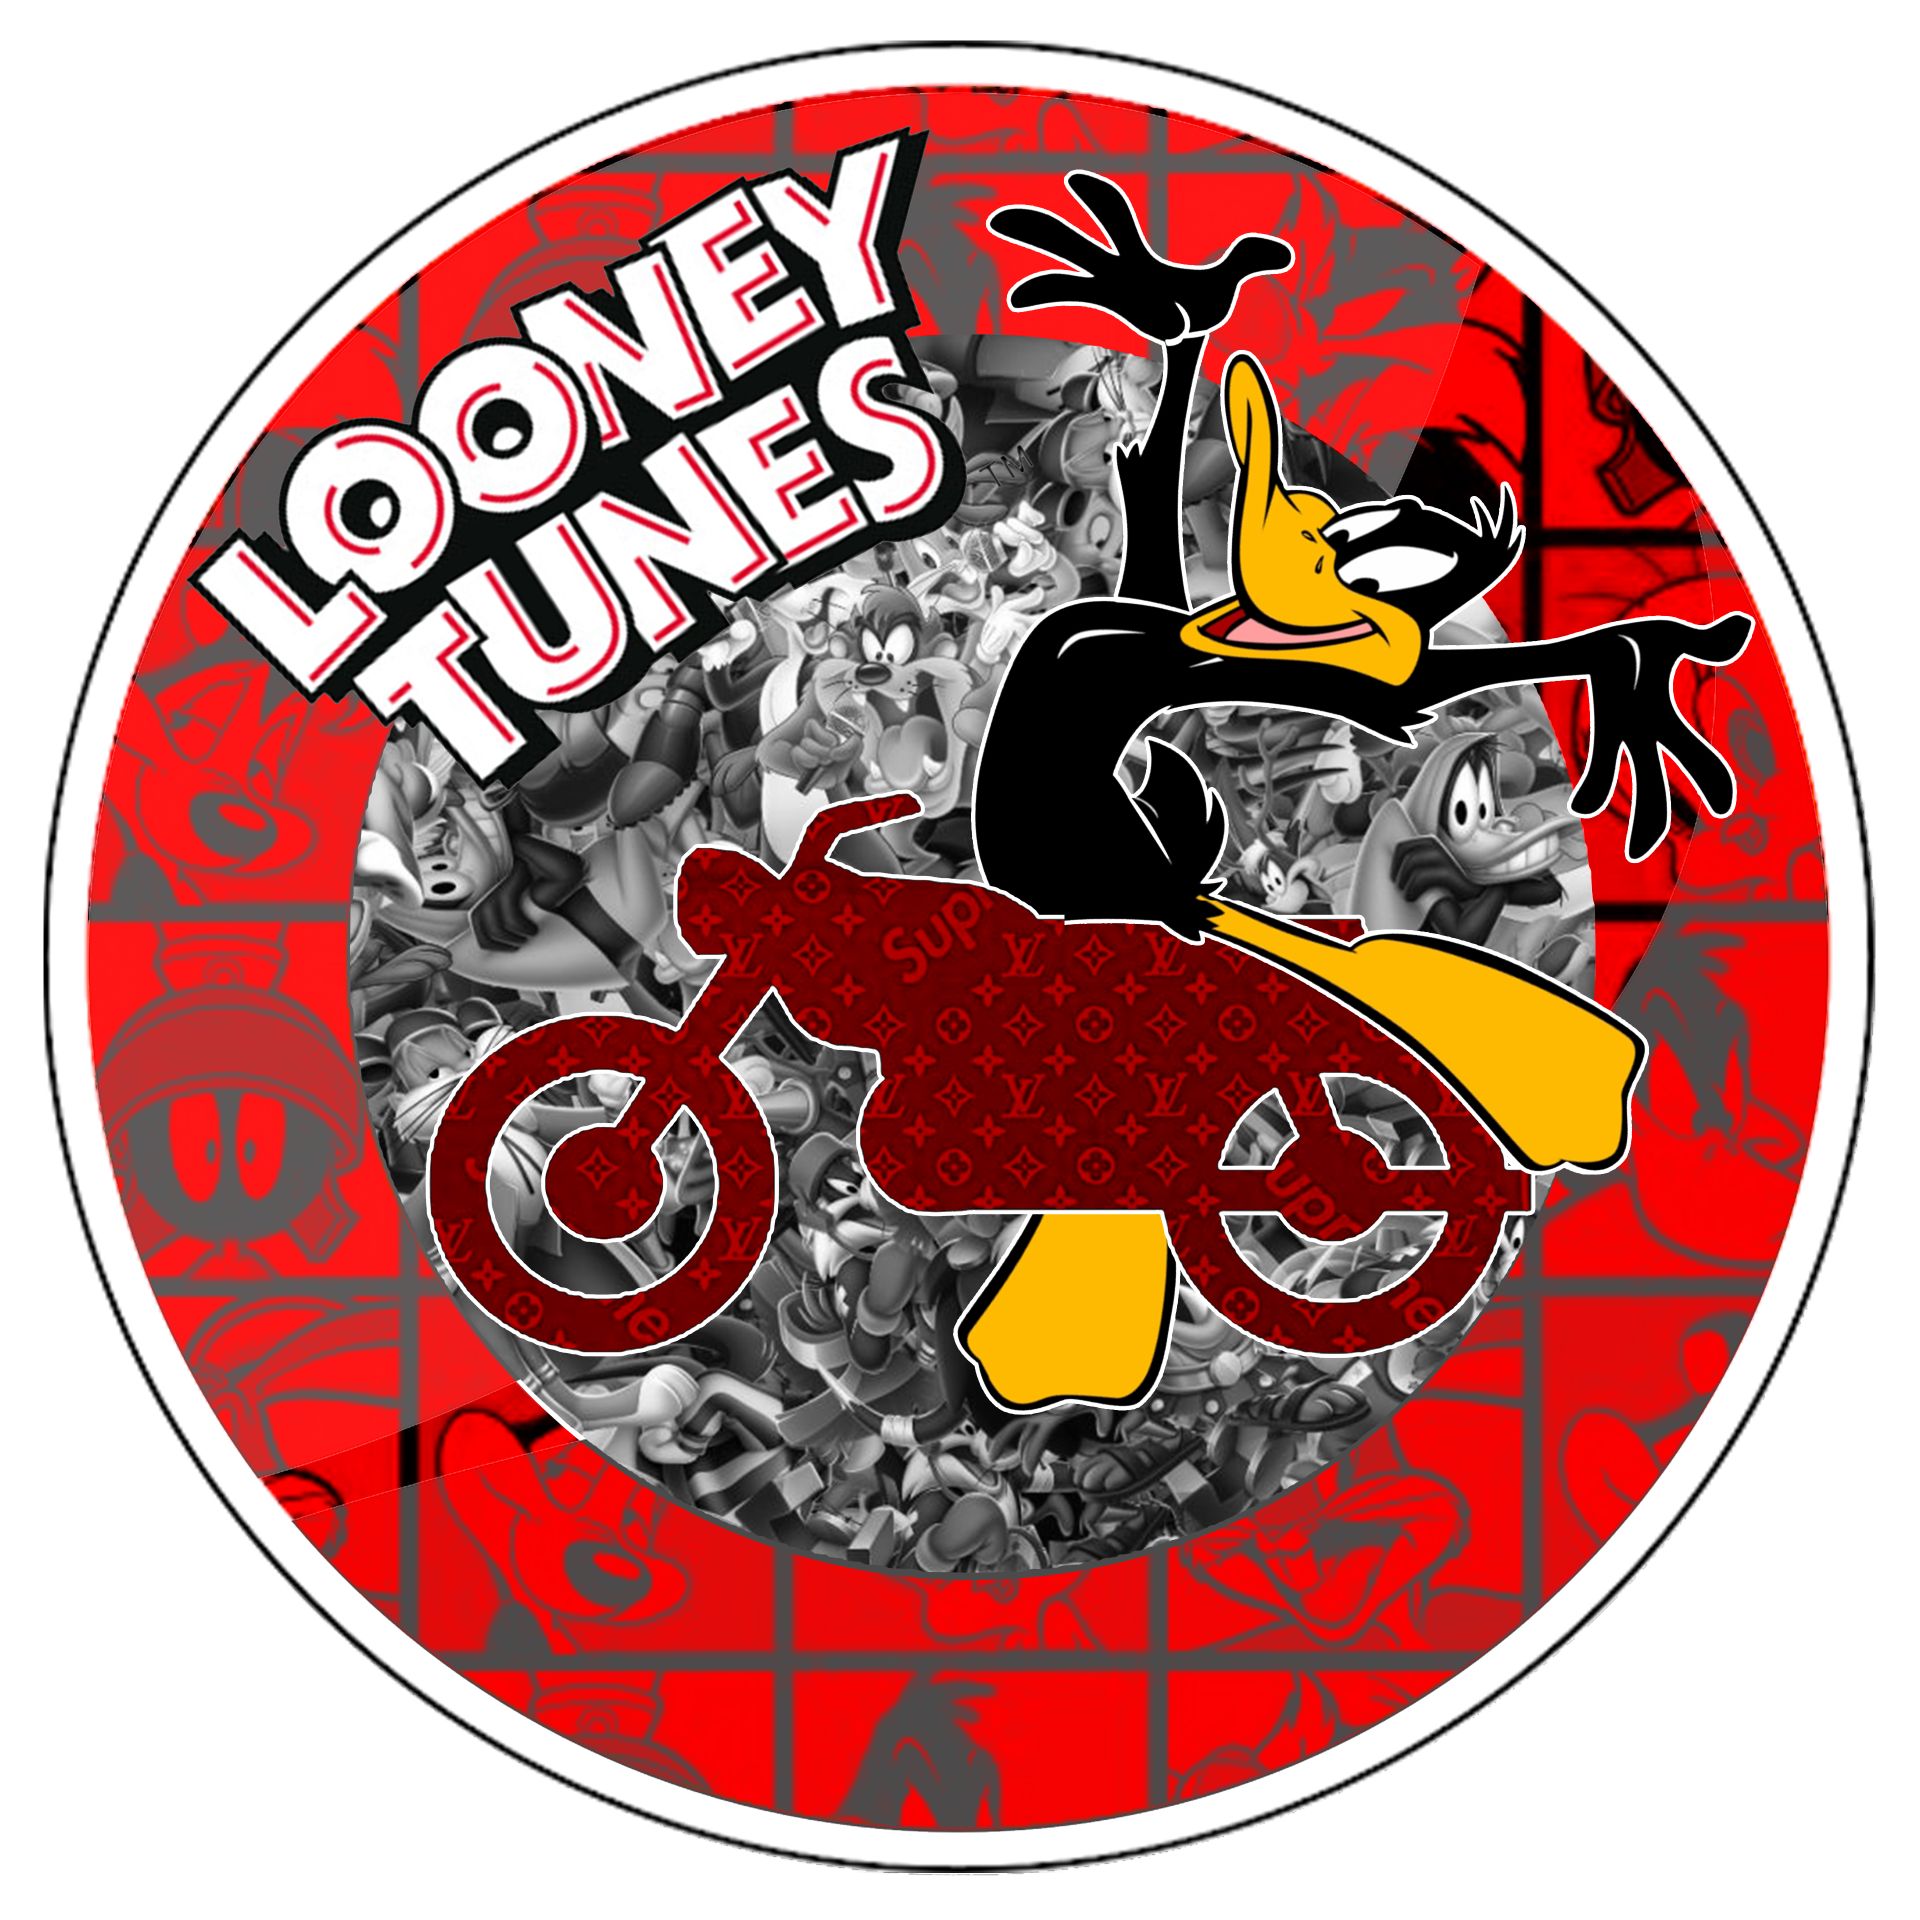 Charly Rocks (Né en 1983) Looney tunes, 2021年

路标

印刷在有机玻璃上，与铝制二维码贴合，背面有挂钩系统

6本&hellip;